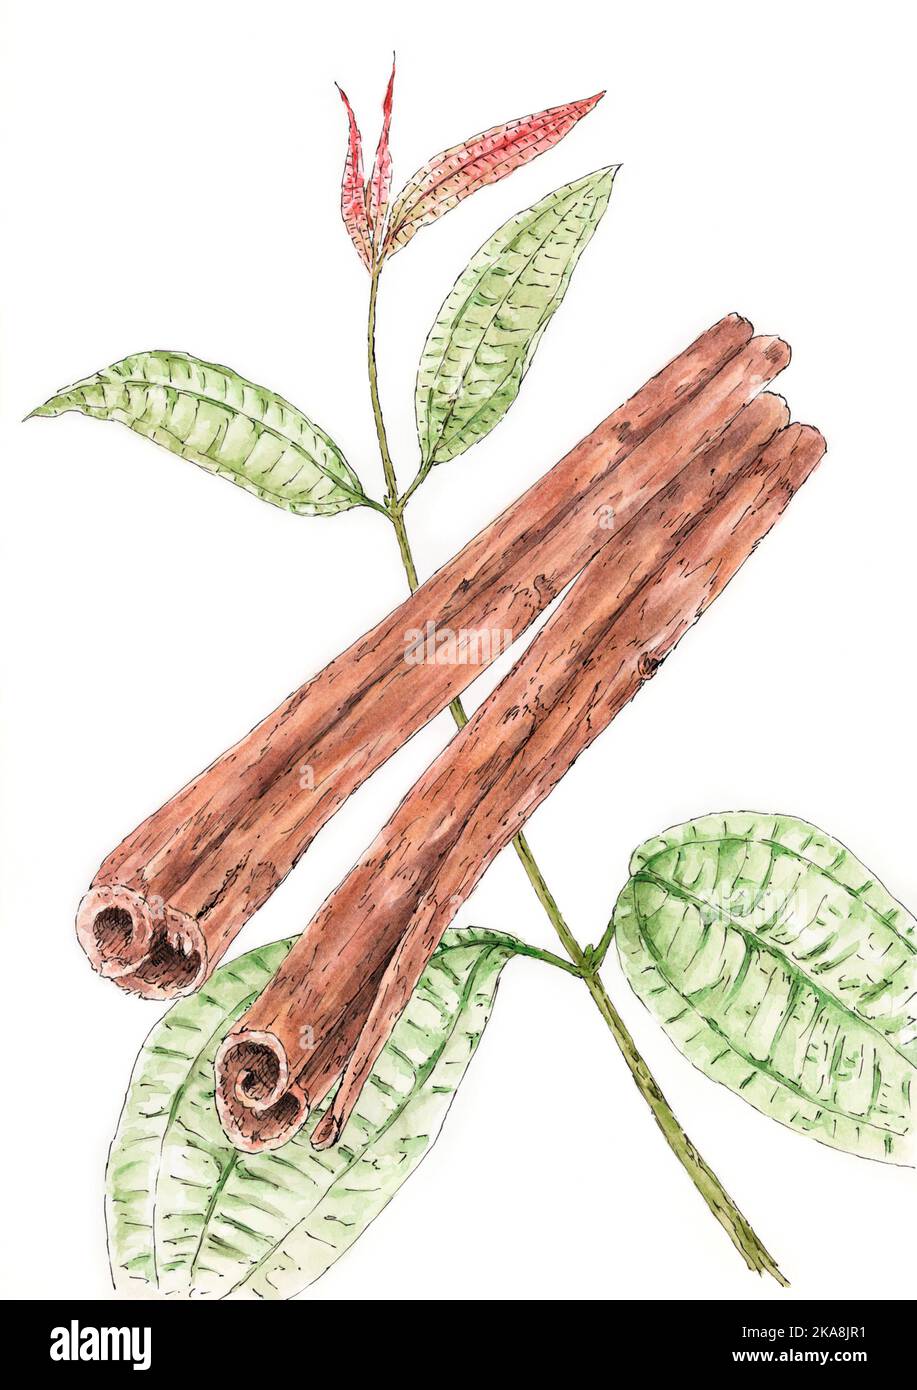 Zimt (Cinnamomum verum) Pflanze mit getrockneten Rindenstreifen. Tinte und Aquarell auf Papier. Stockfoto